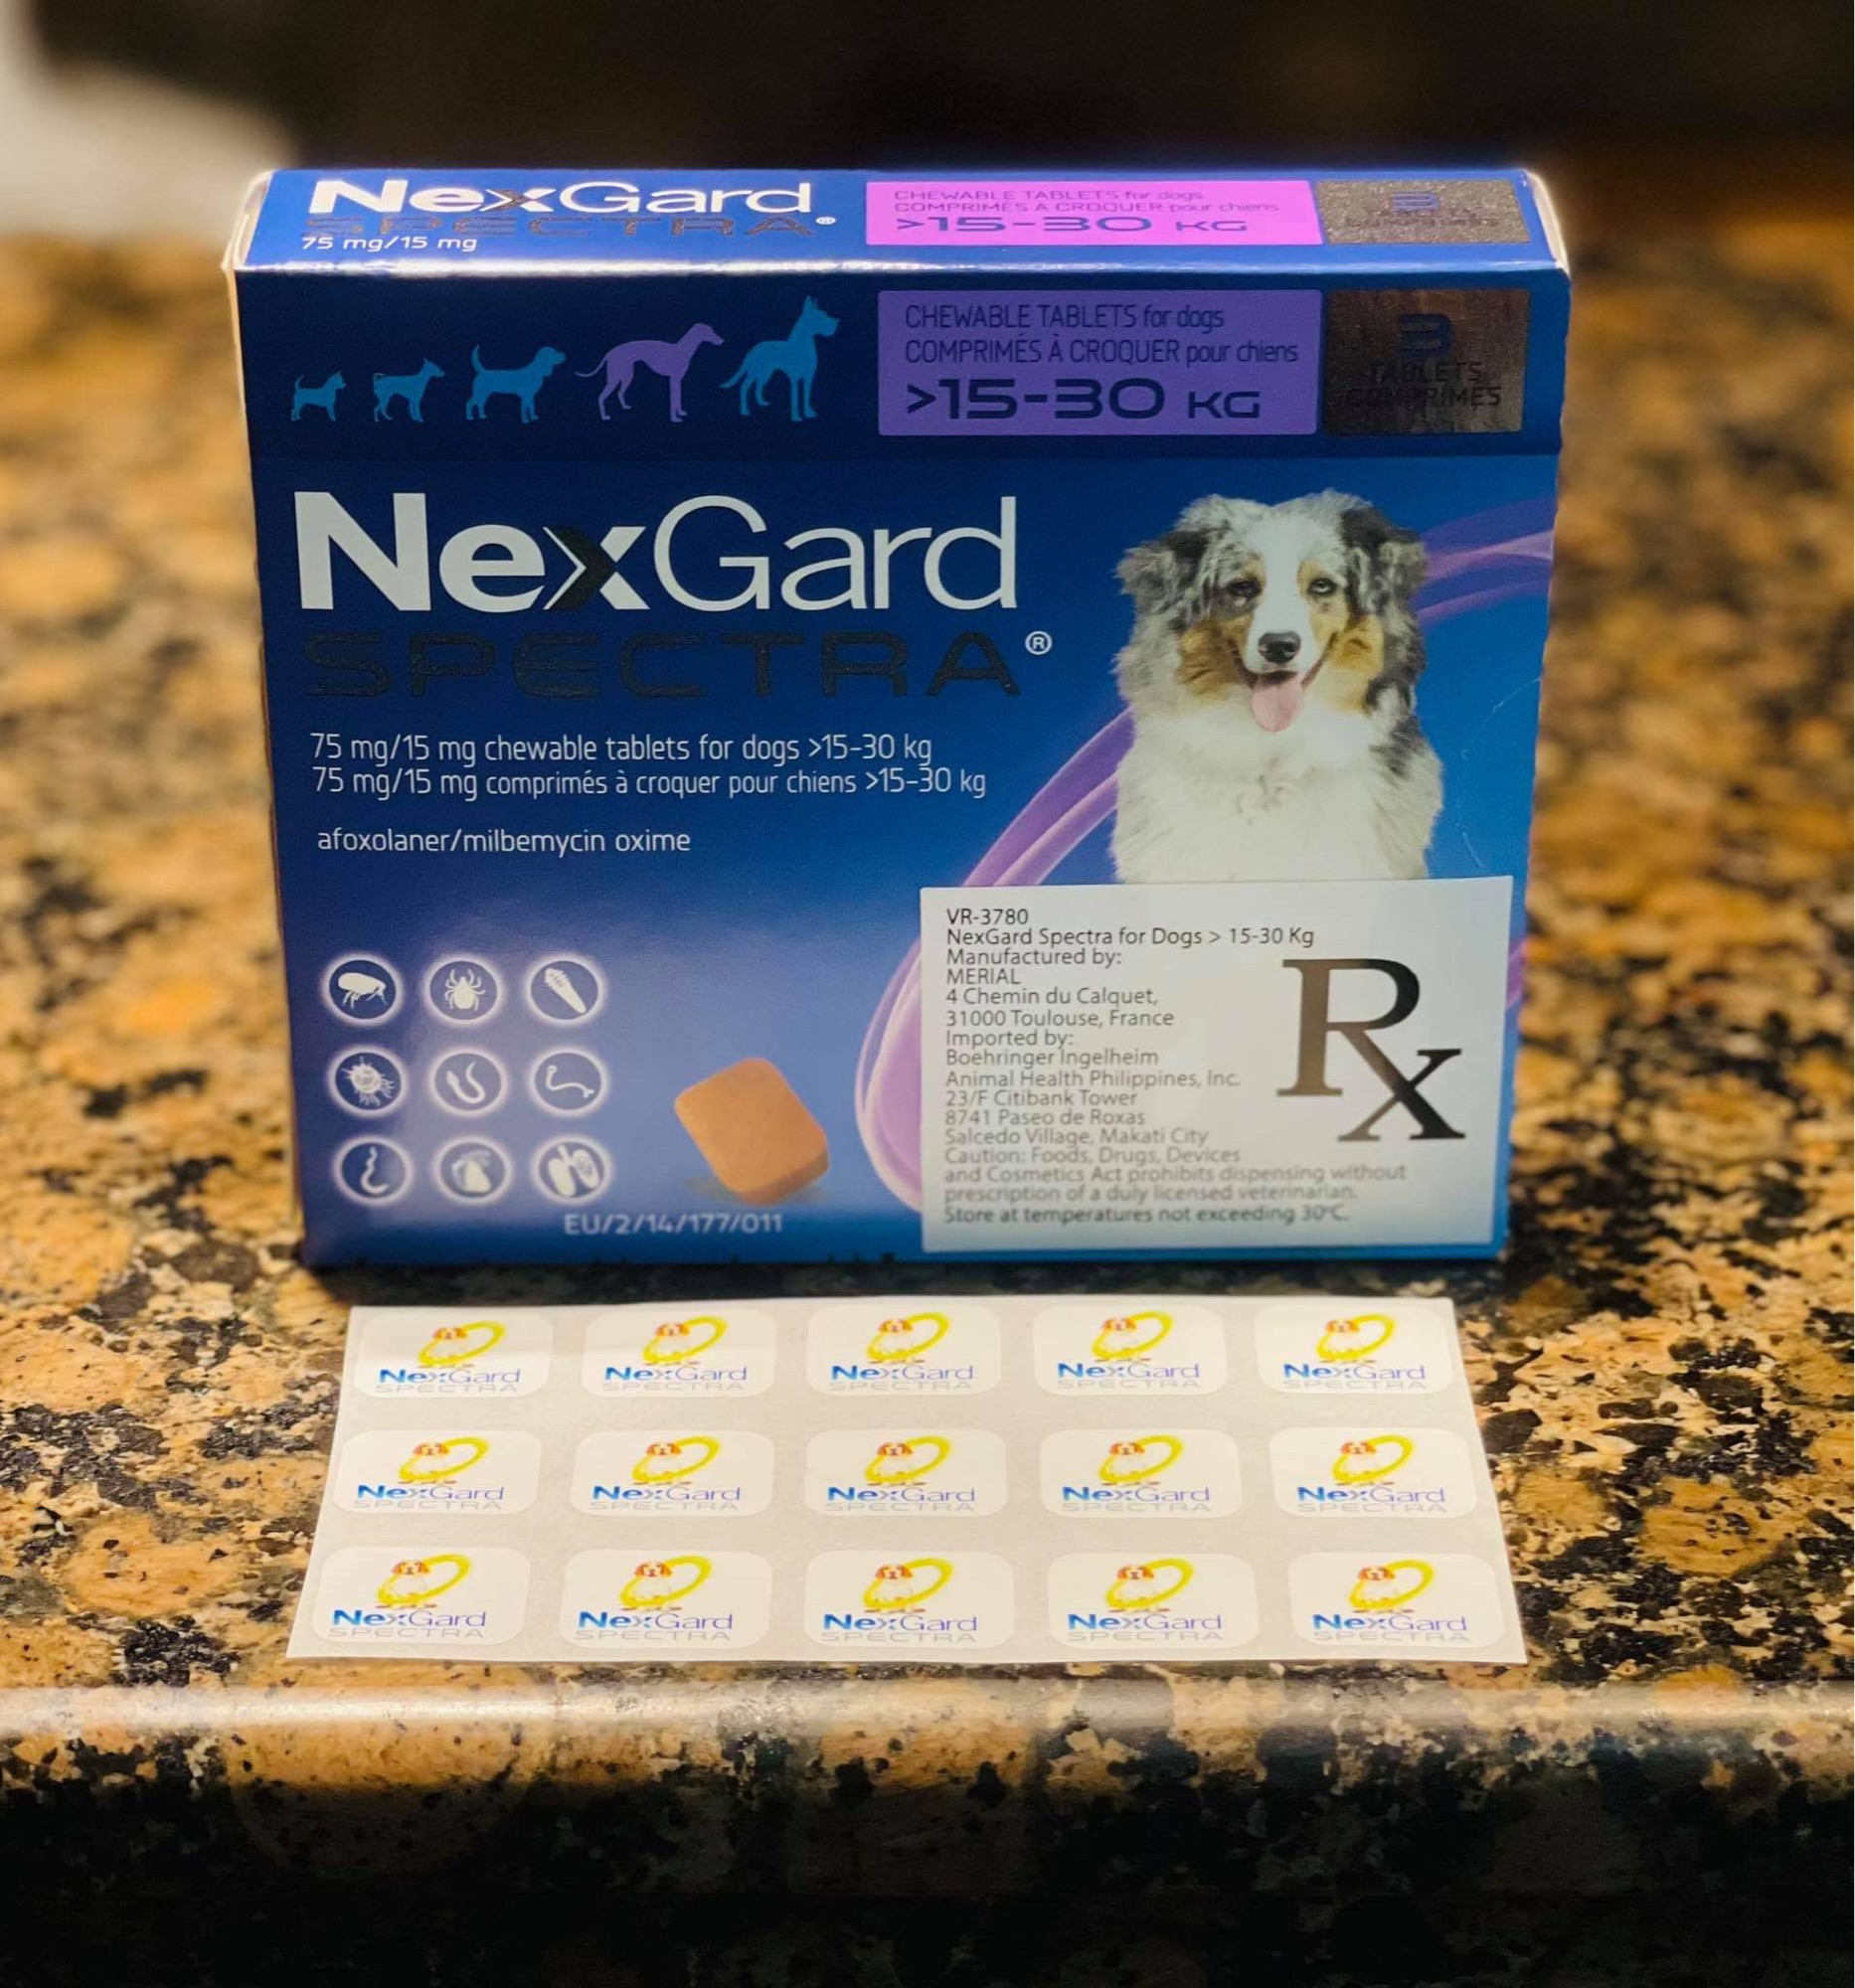 НЕКСГАРД турецкий. NEXGARD Spectra для собак 3 компонентная 1 большая и 2 маленькие. NEXGARD Spectra компонентная 1 большая и 2 маленькие таблетки. NEXGARD Spectra в руках.